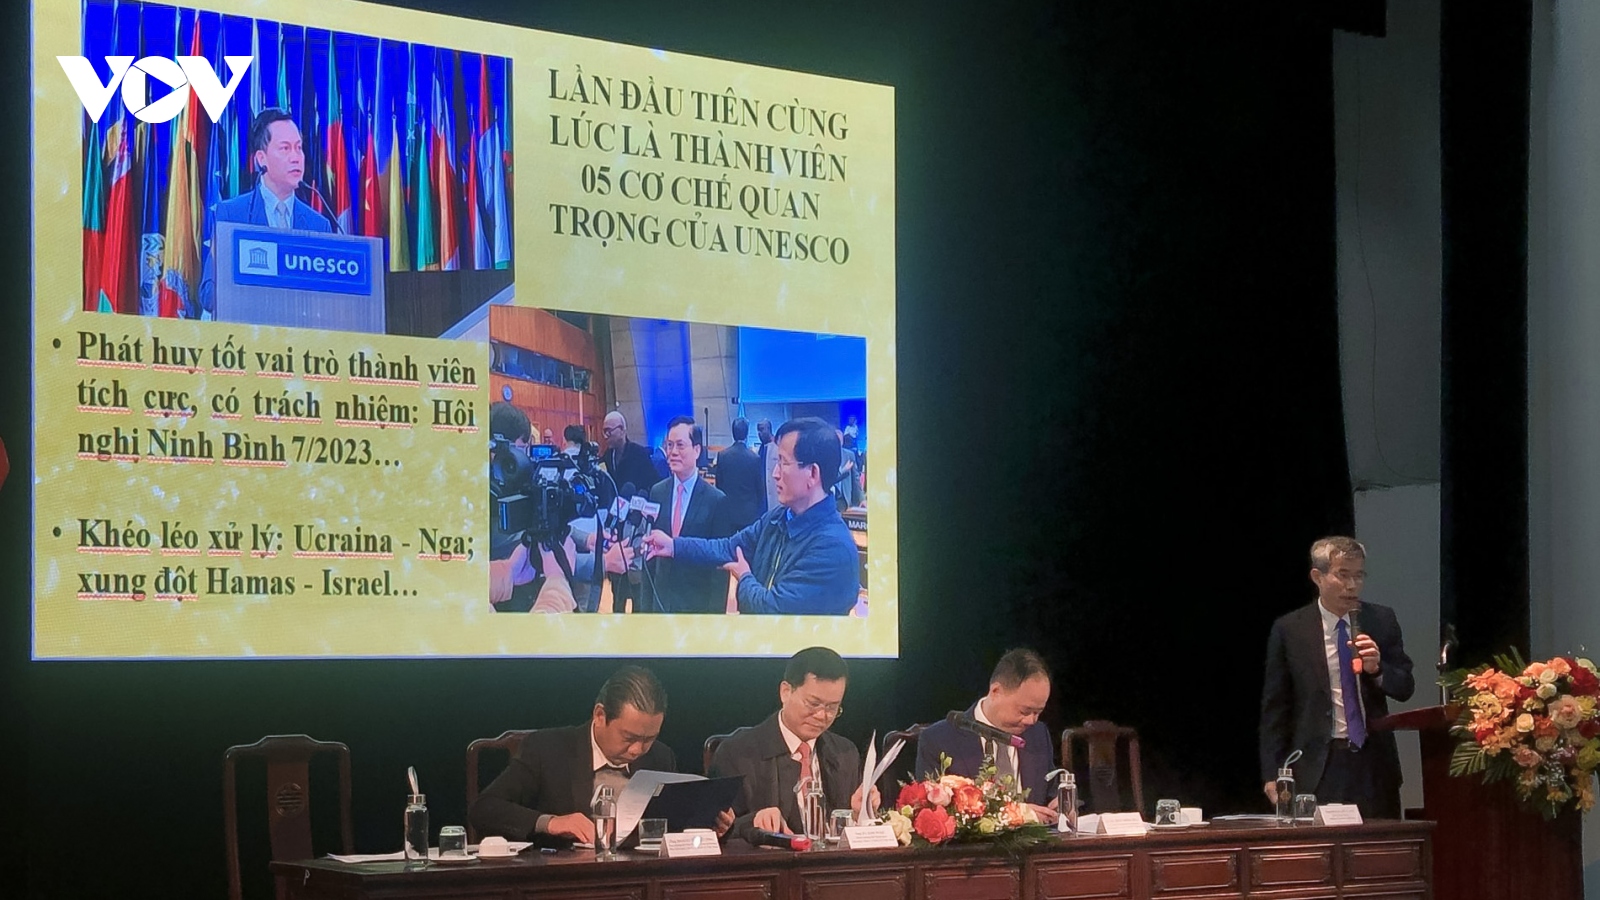 Ủy ban Quốc gia UNESCO Việt Nam phát huy vai trò chủ động, hợp tác với UNESCO